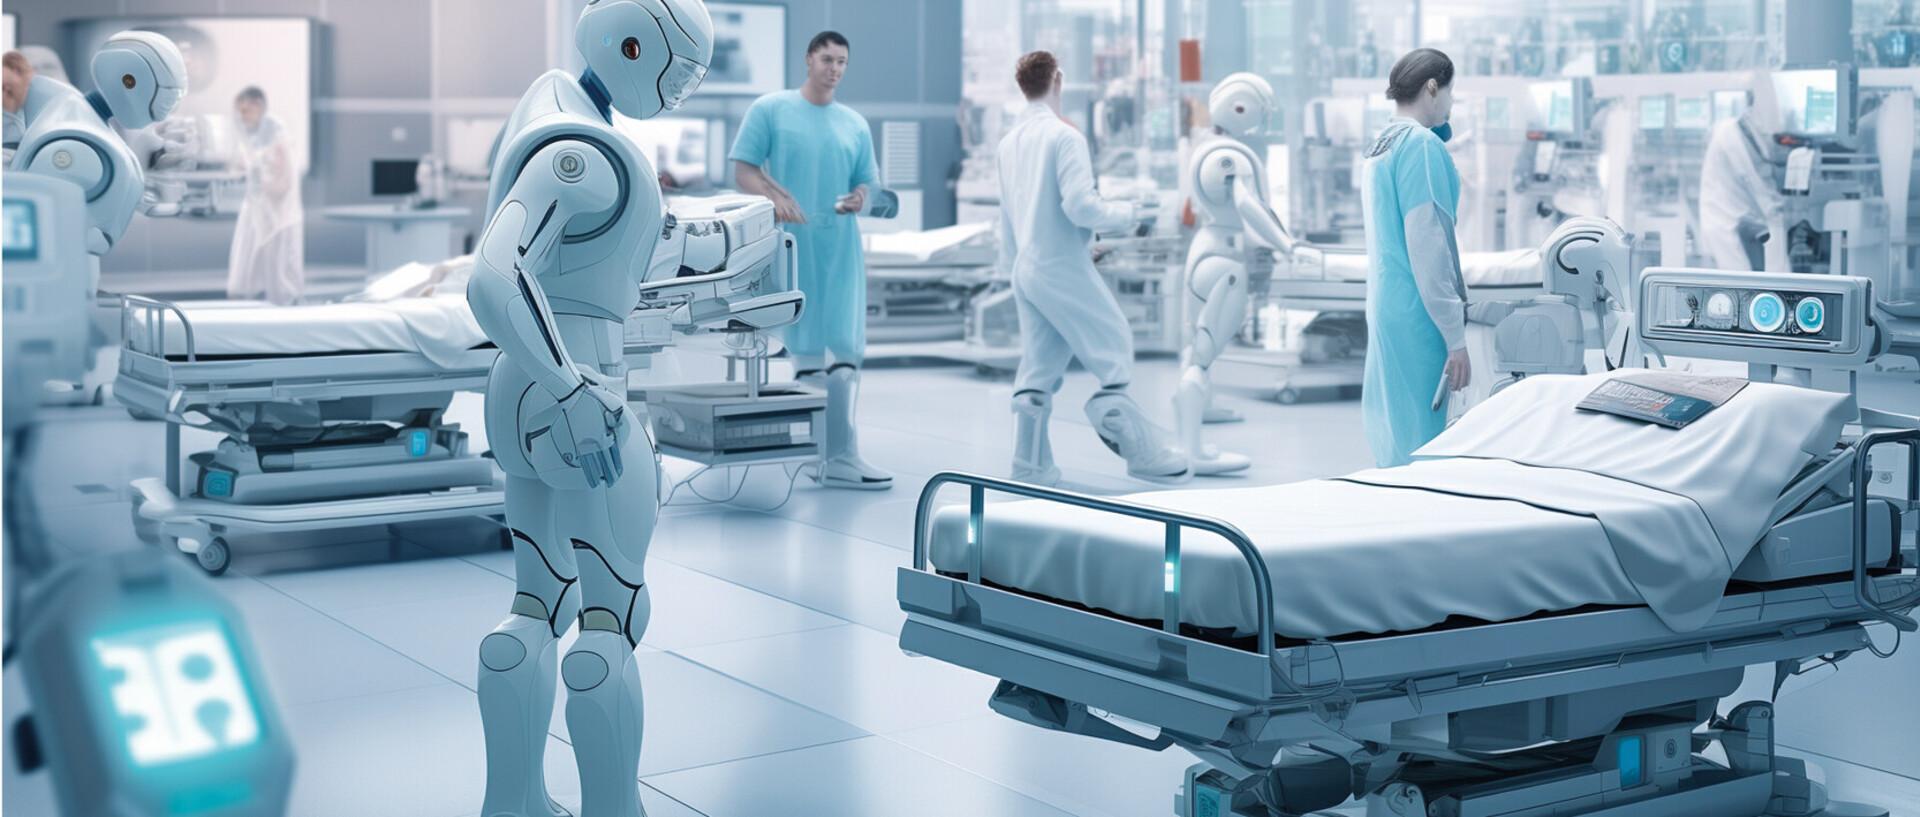 Roboter und Menschen stehen inmitten von Krankenhaus-Betten.